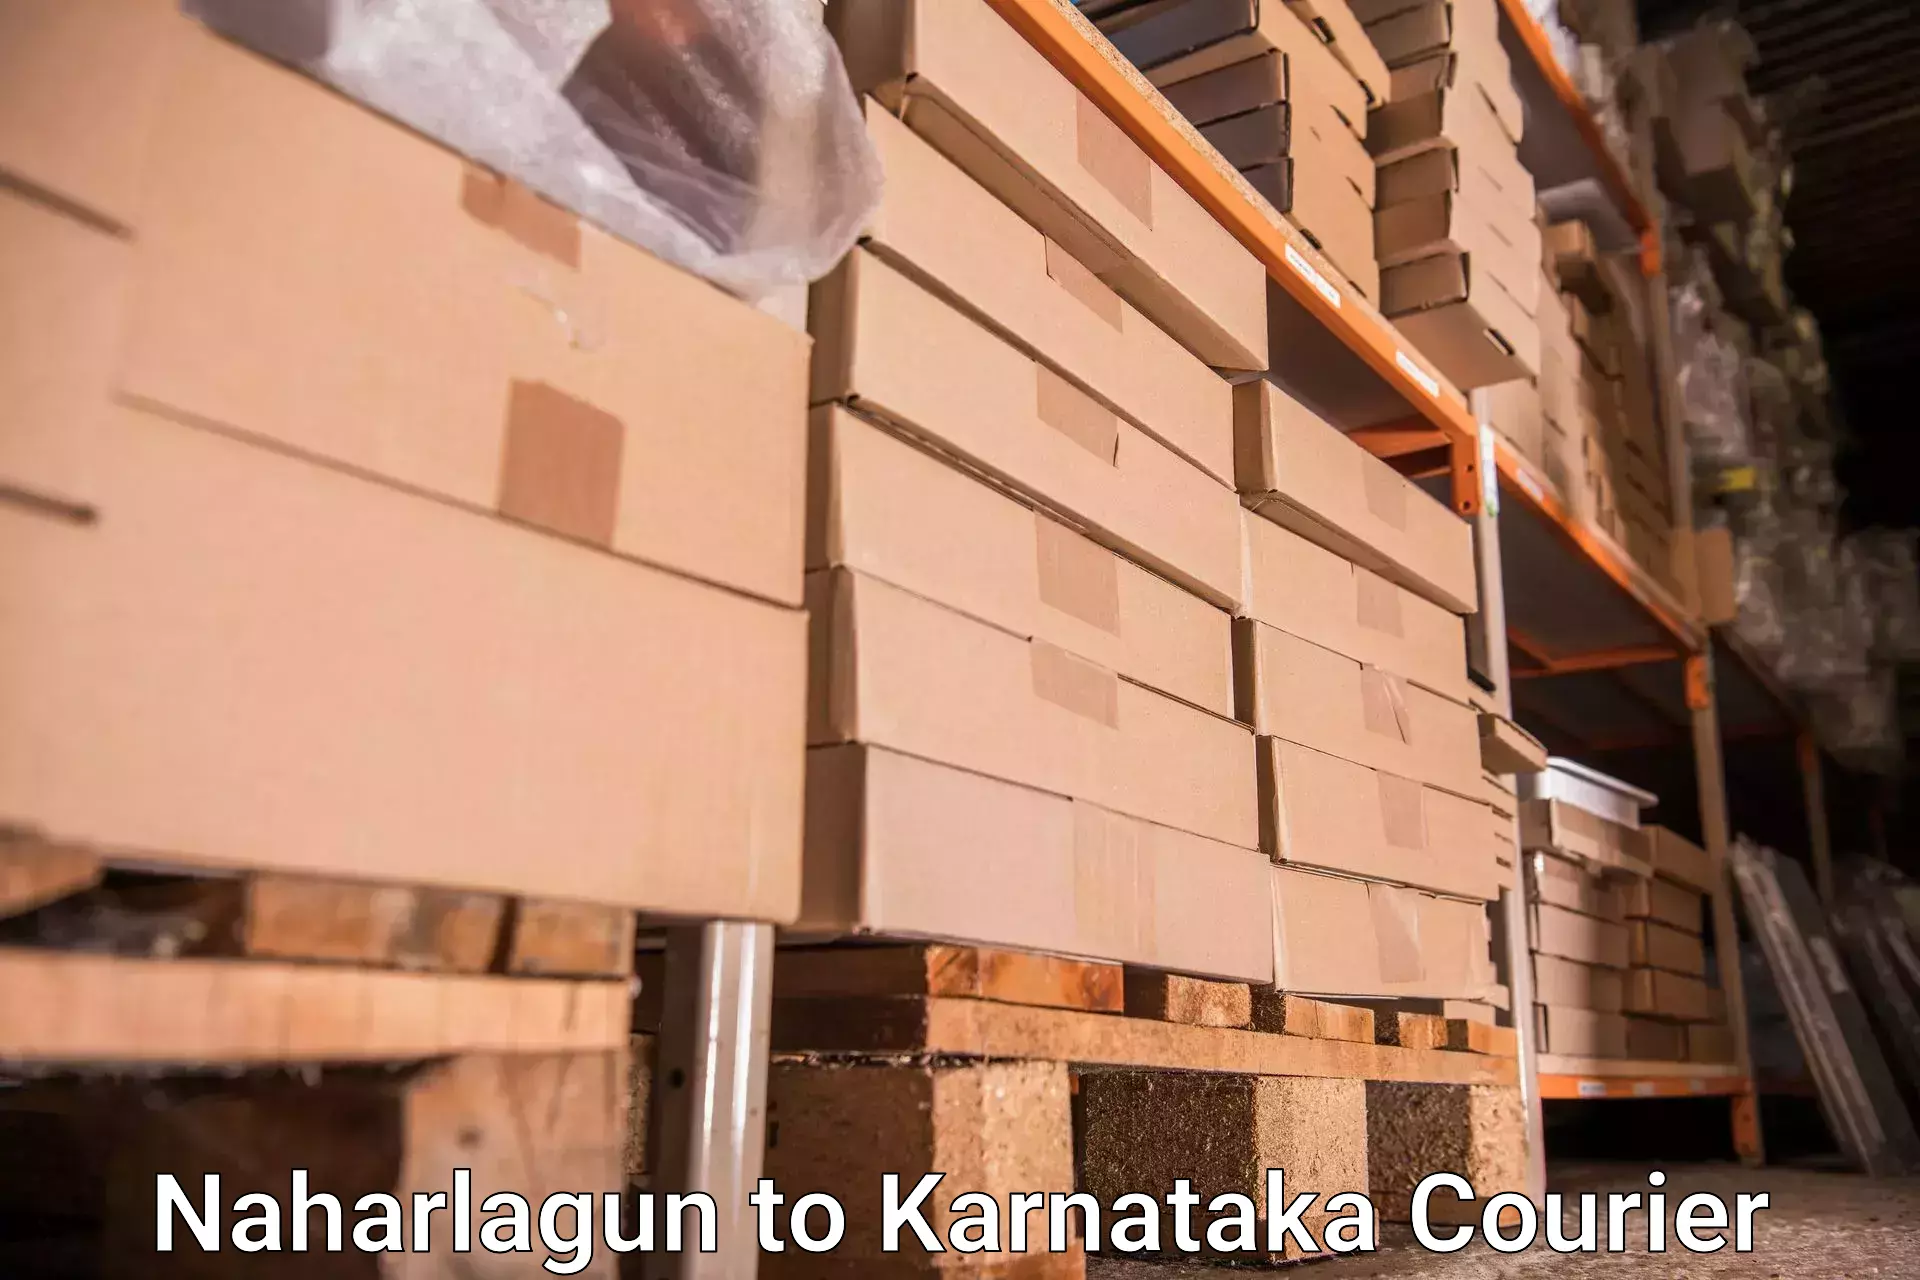 Comprehensive baggage service Naharlagun to Kanjarakatte